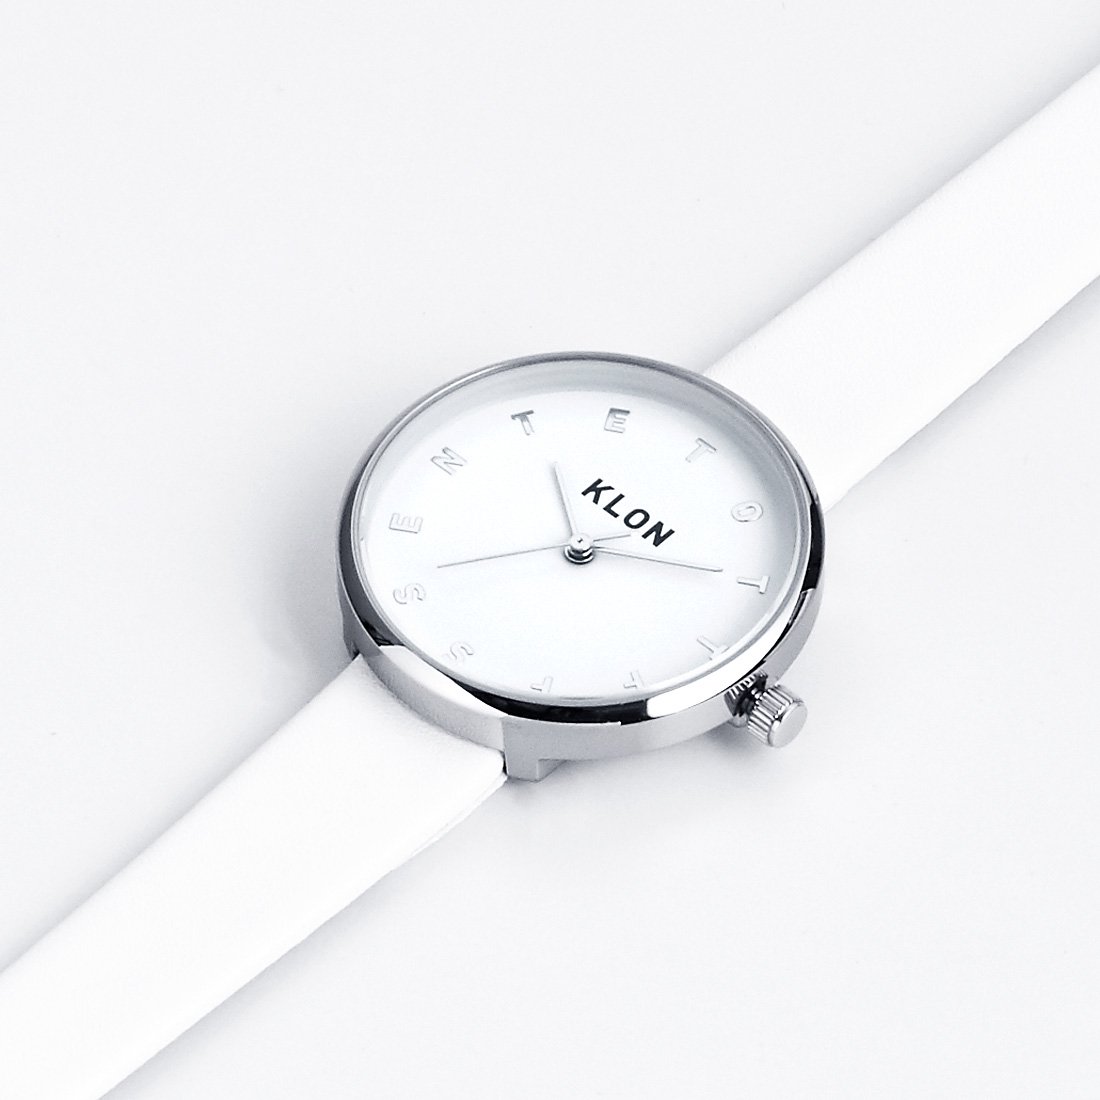 【組合せ商品】KLON ALPHABET TIME Ver.SILVER 33mm(BLACK×WHITE) カジュアル 腕時計